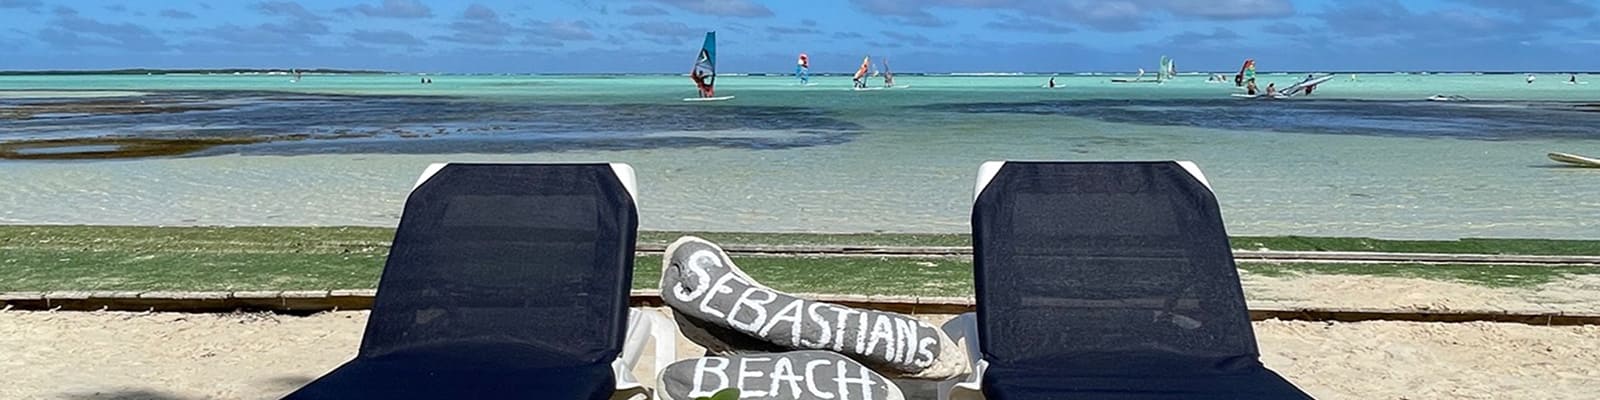 sebastians-beach-bar-restaurant-bonaire-slider-1